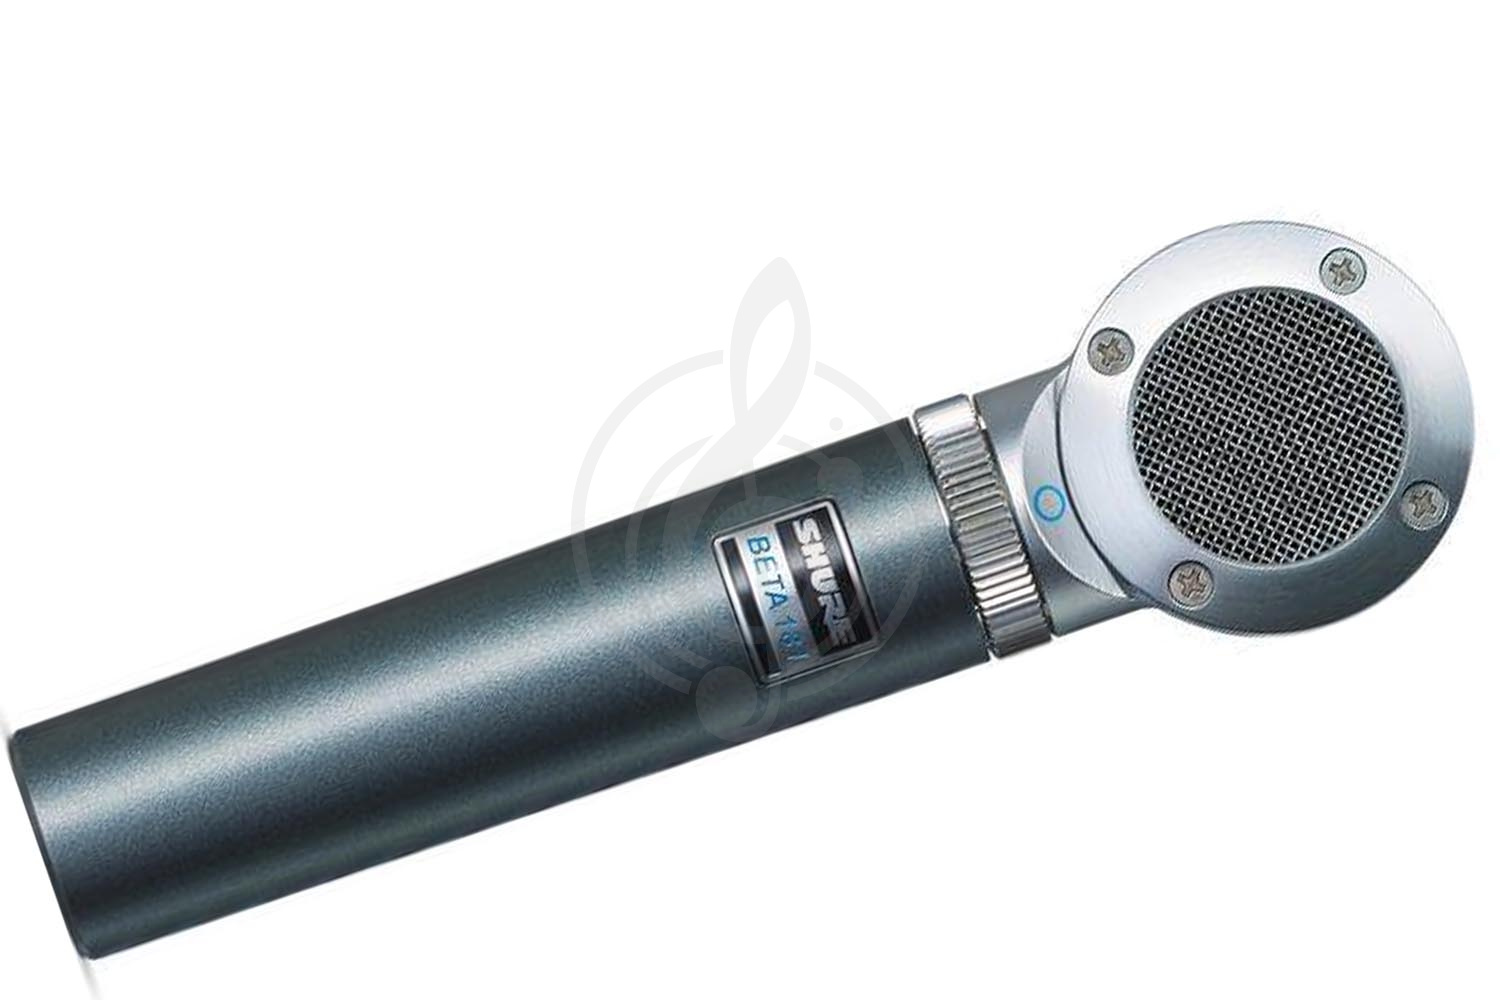 Инструментальный микрофон Инструментальные микрофоны Shure SHURE BETA181/O - инструментальный микрофон BETA181/O - фото 1